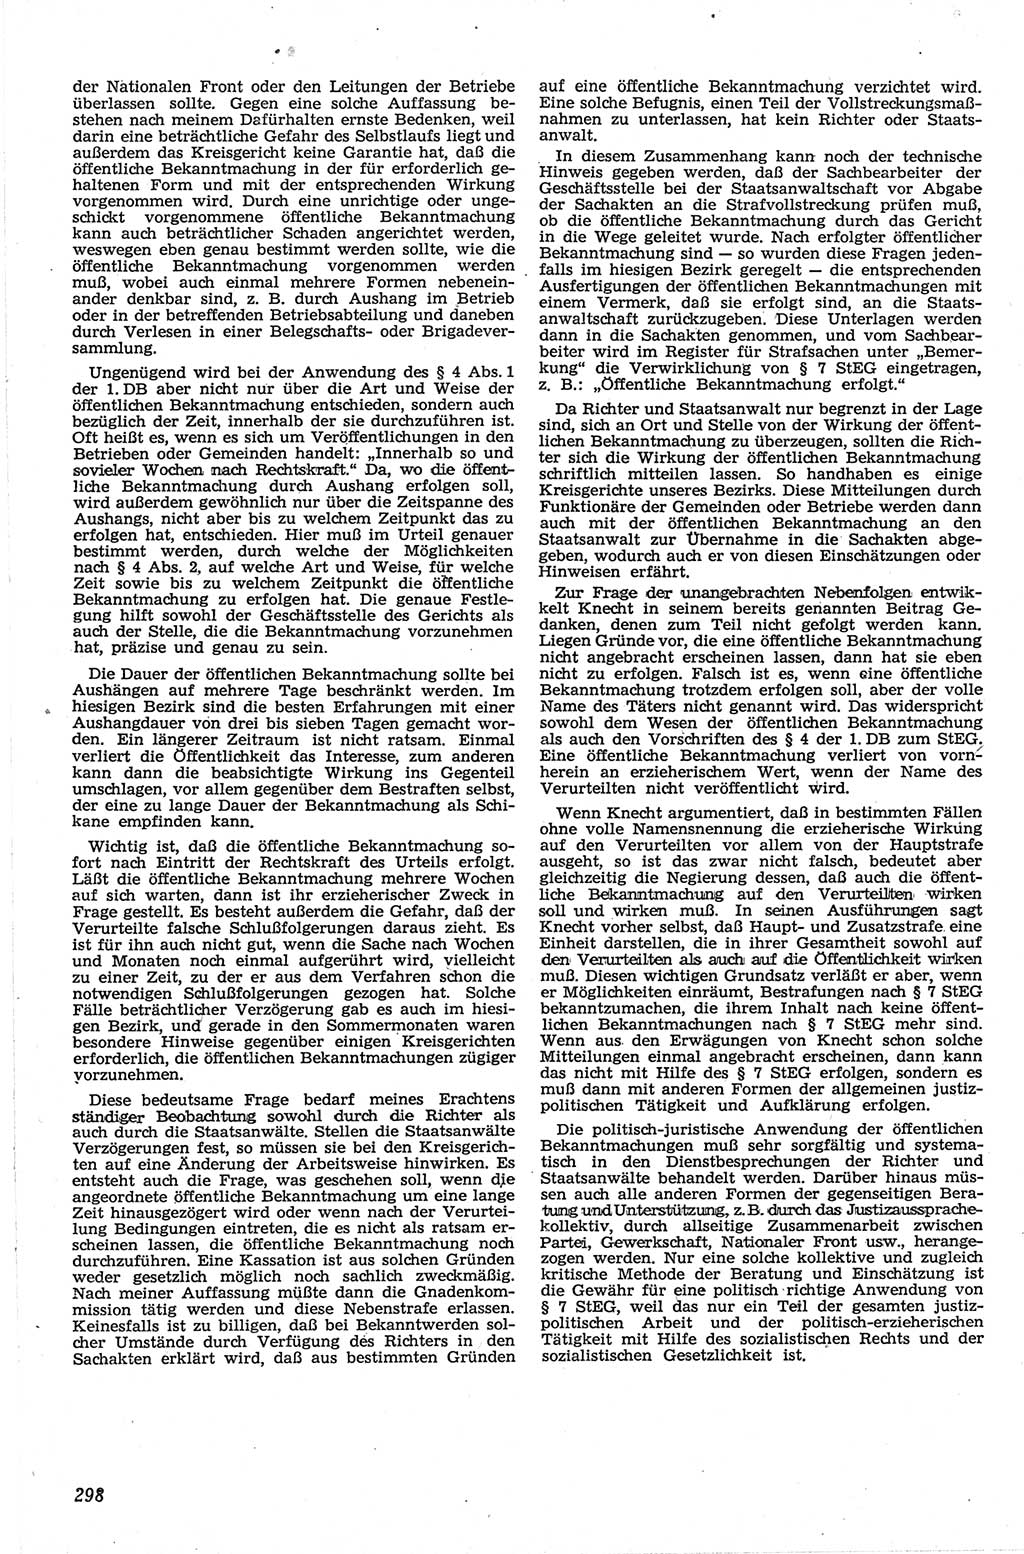 Neue Justiz (NJ), Zeitschrift für Recht und Rechtswissenschaft [Deutsche Demokratische Republik (DDR)], 13. Jahrgang 1959, Seite 298 (NJ DDR 1959, S. 298)